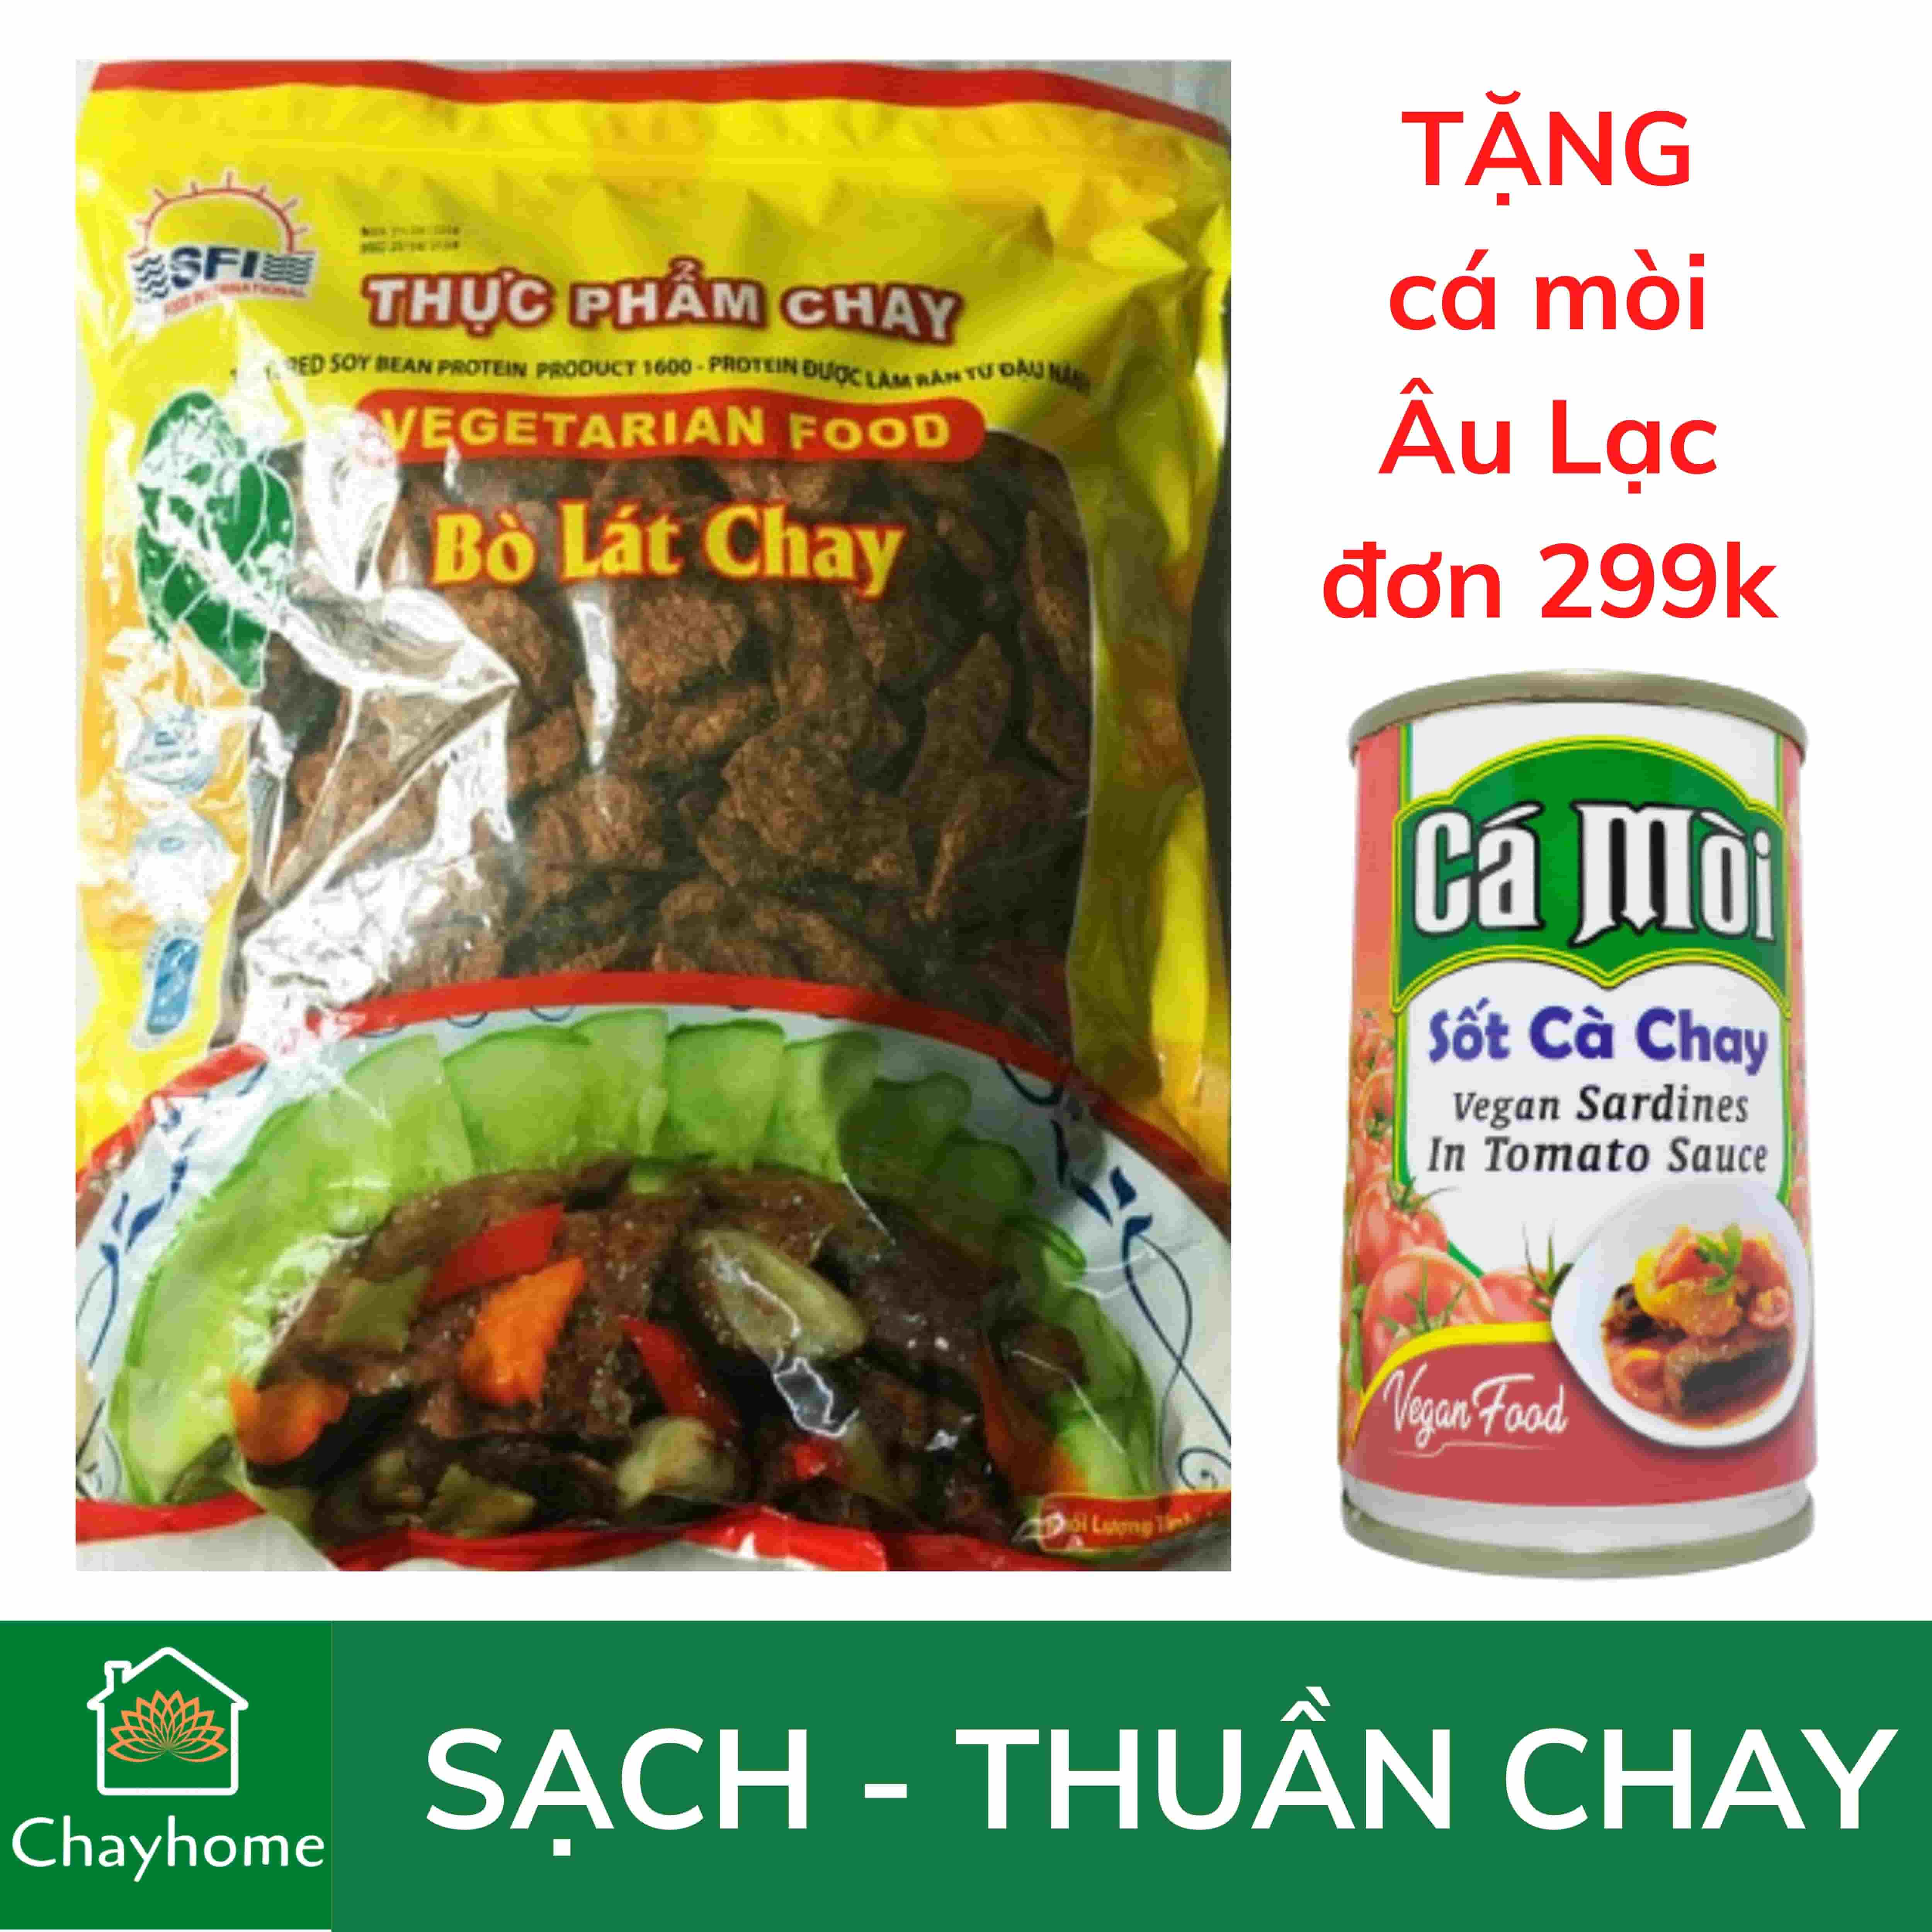 100g Bò Lát Chay Vegan- Thơm Mềm Thuần Chay - Thực Phẩm Chay Loan Vy + TẶNG Chả Lụa Chay Âu Lạc Đơn 399k